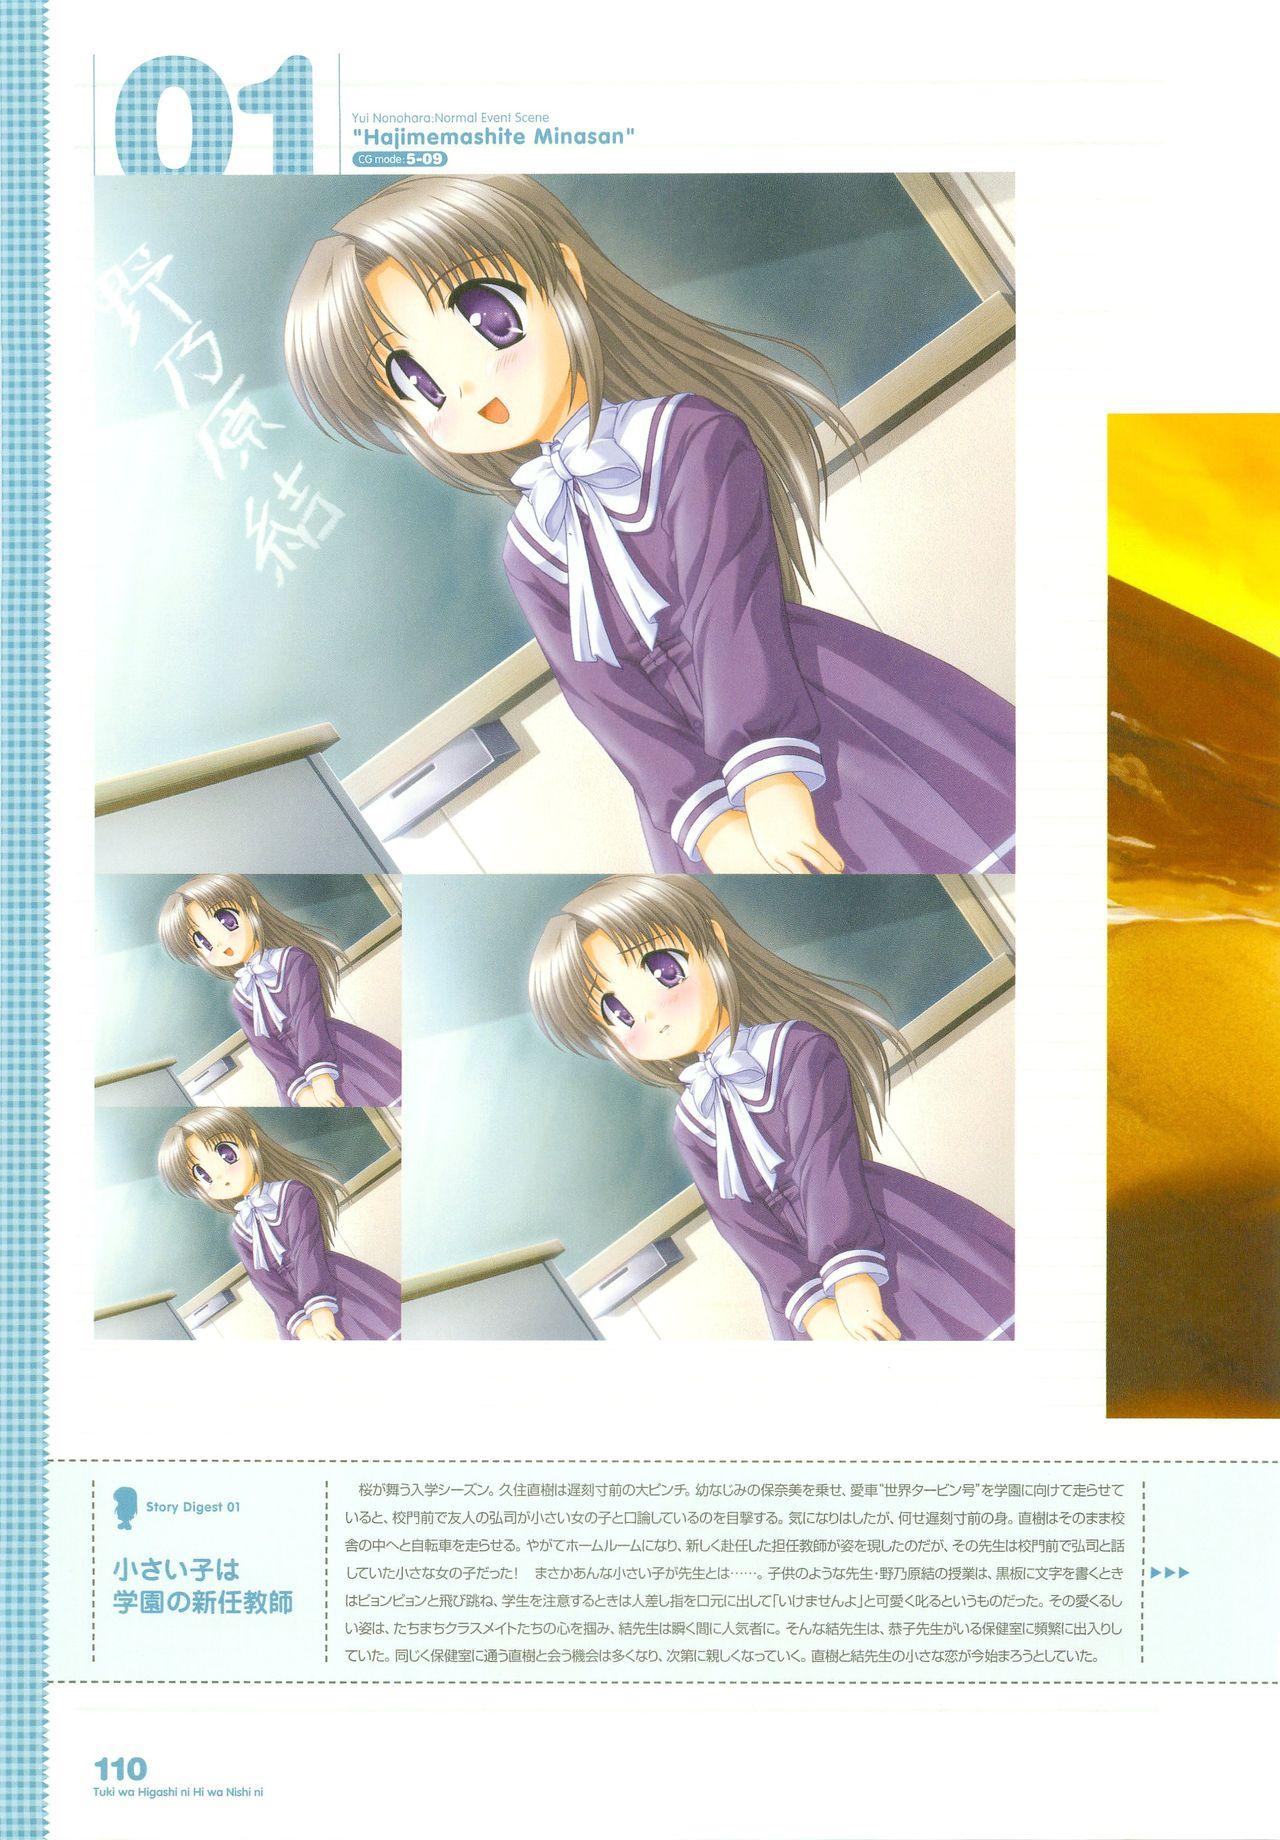 Tsuki wa Higashi ni Hi wa Nishi ni - Operation Sanctuary - Visual Fan Book Shokai Ban 138